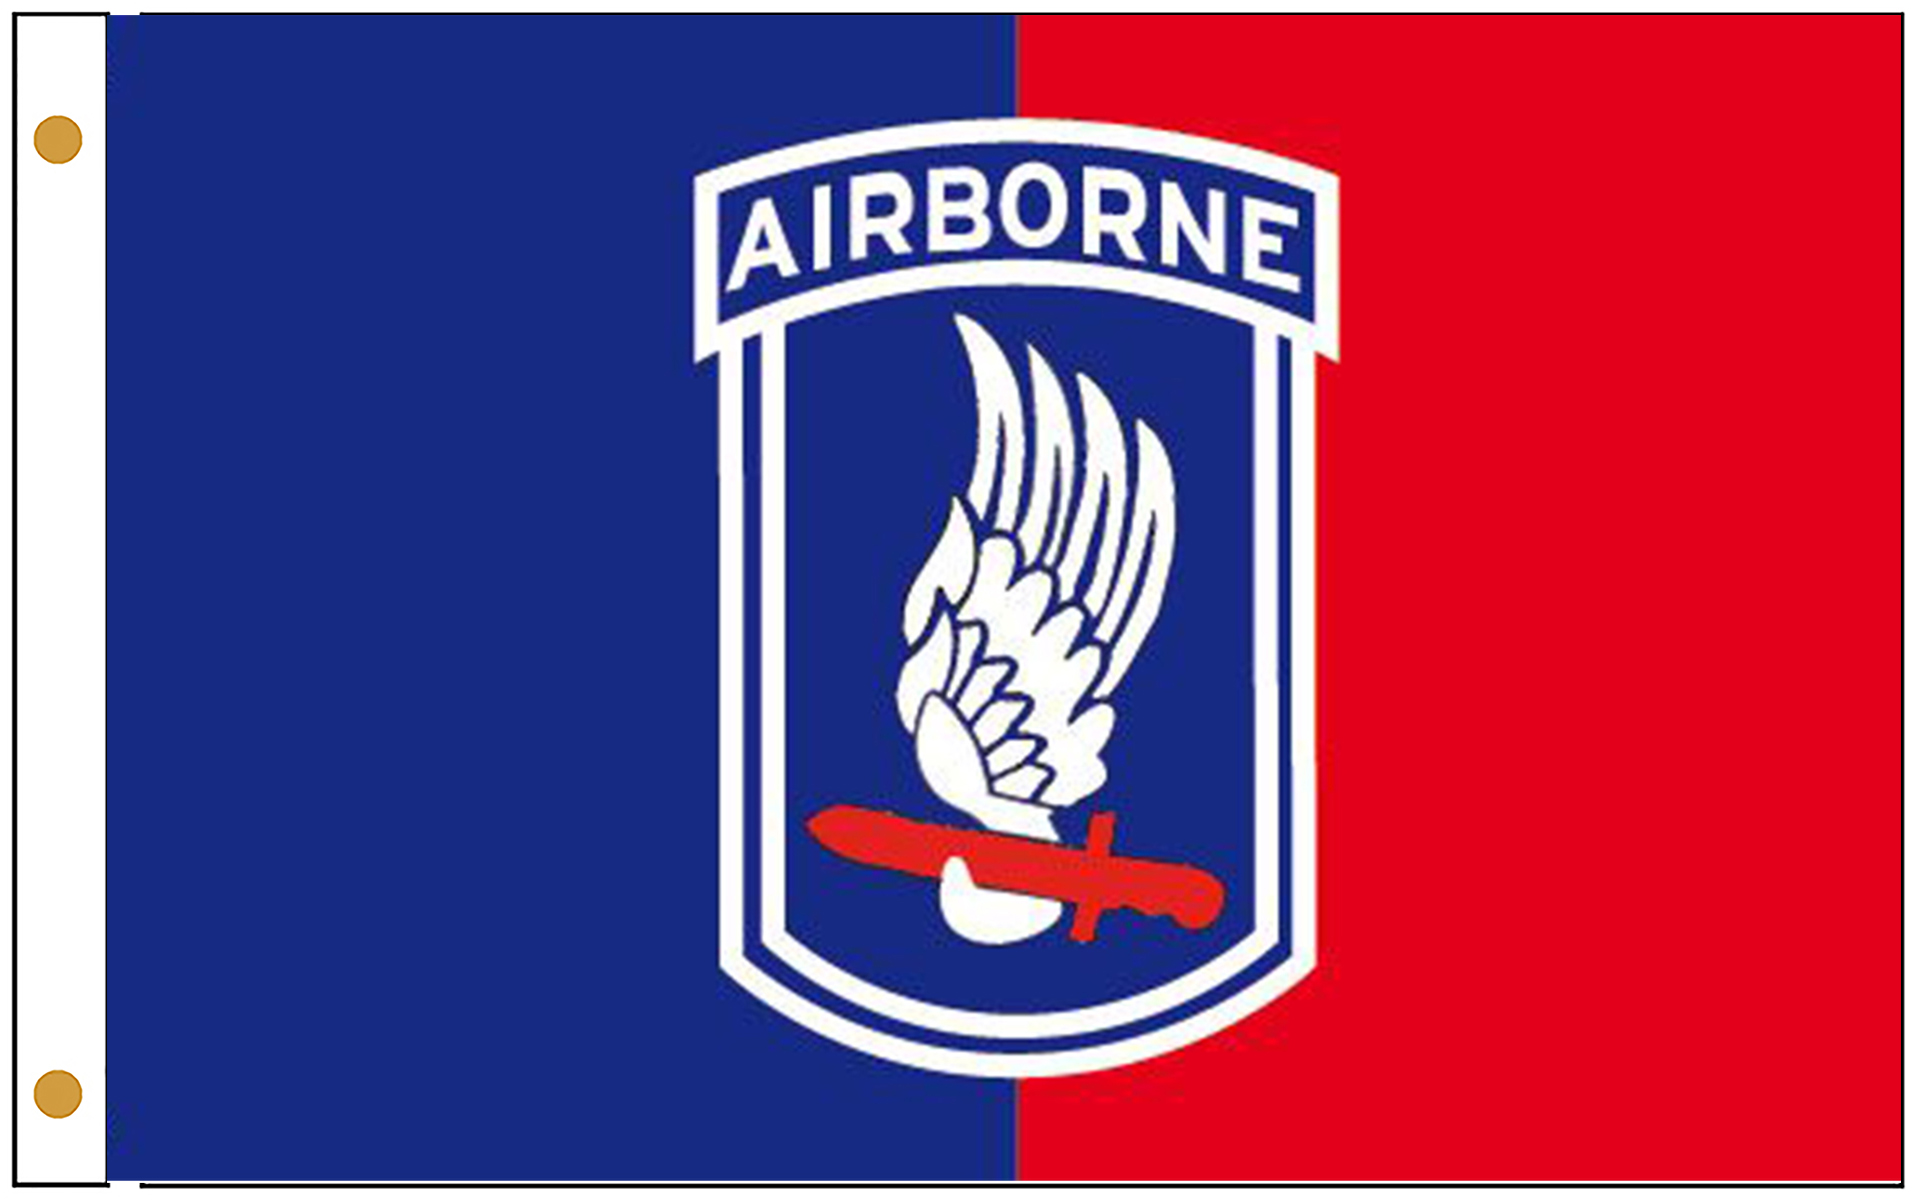 173rd Airborne Brigade Flags